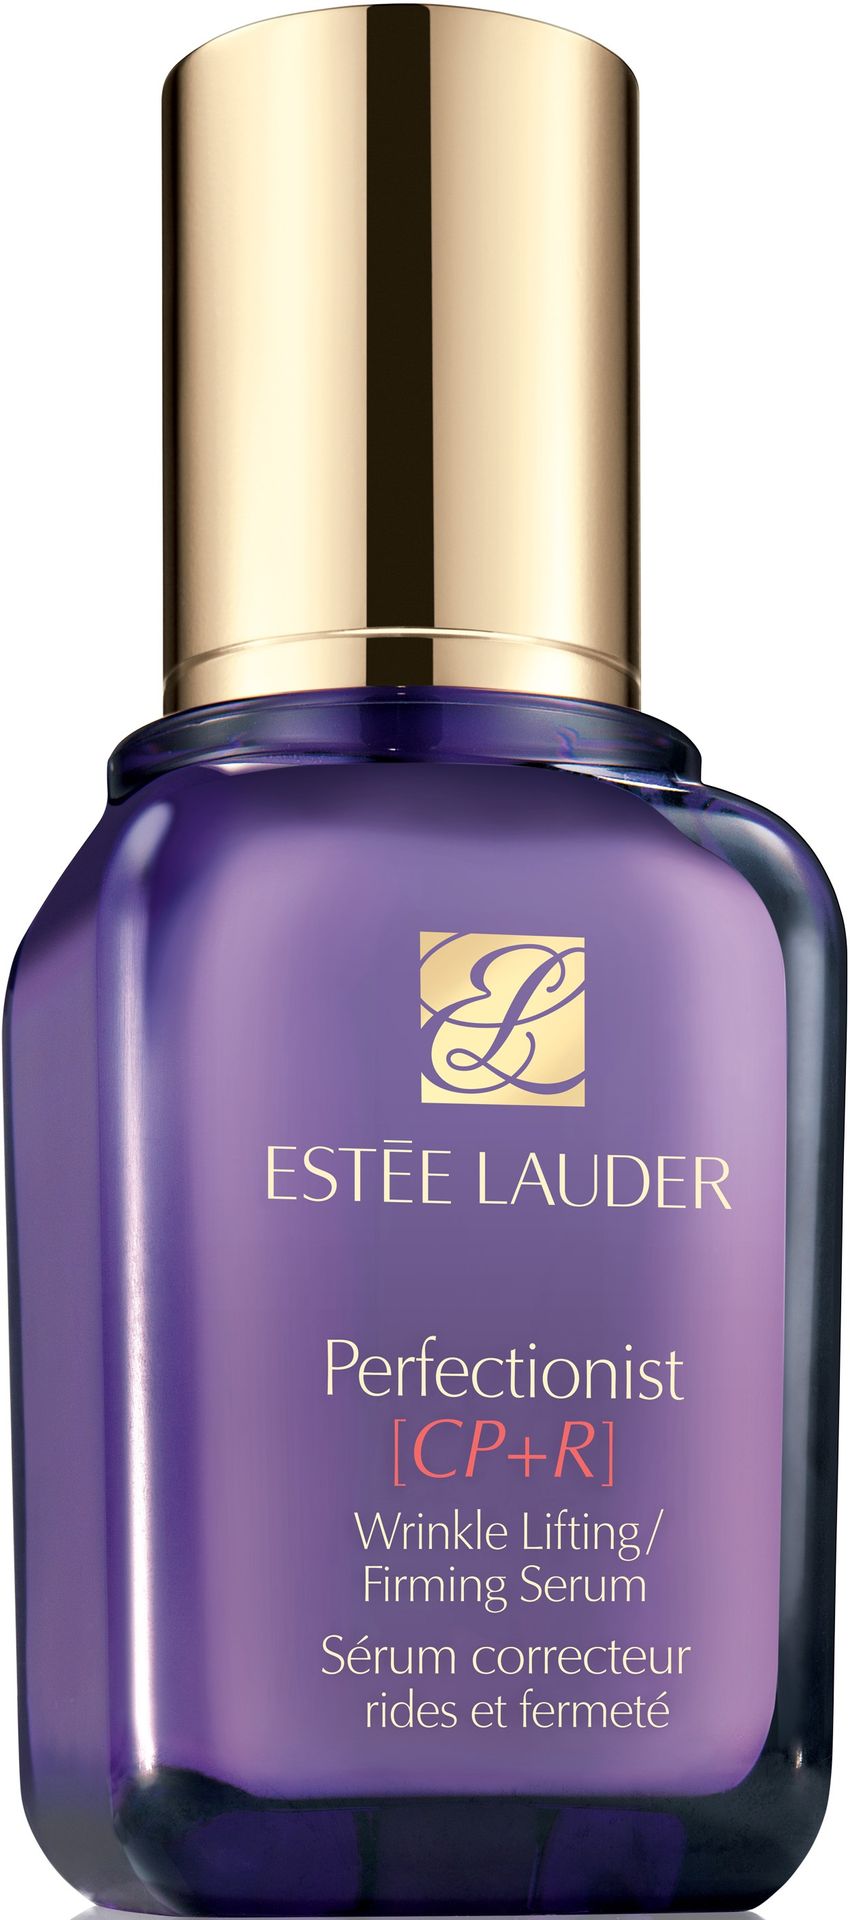 Estee Lauder Estée Lauder Perfectionist serum liftingująco ujędrniające do wszystkich rodzajów skóry CP+R Wrinkle Lifting/Firming Serum) 50 ml